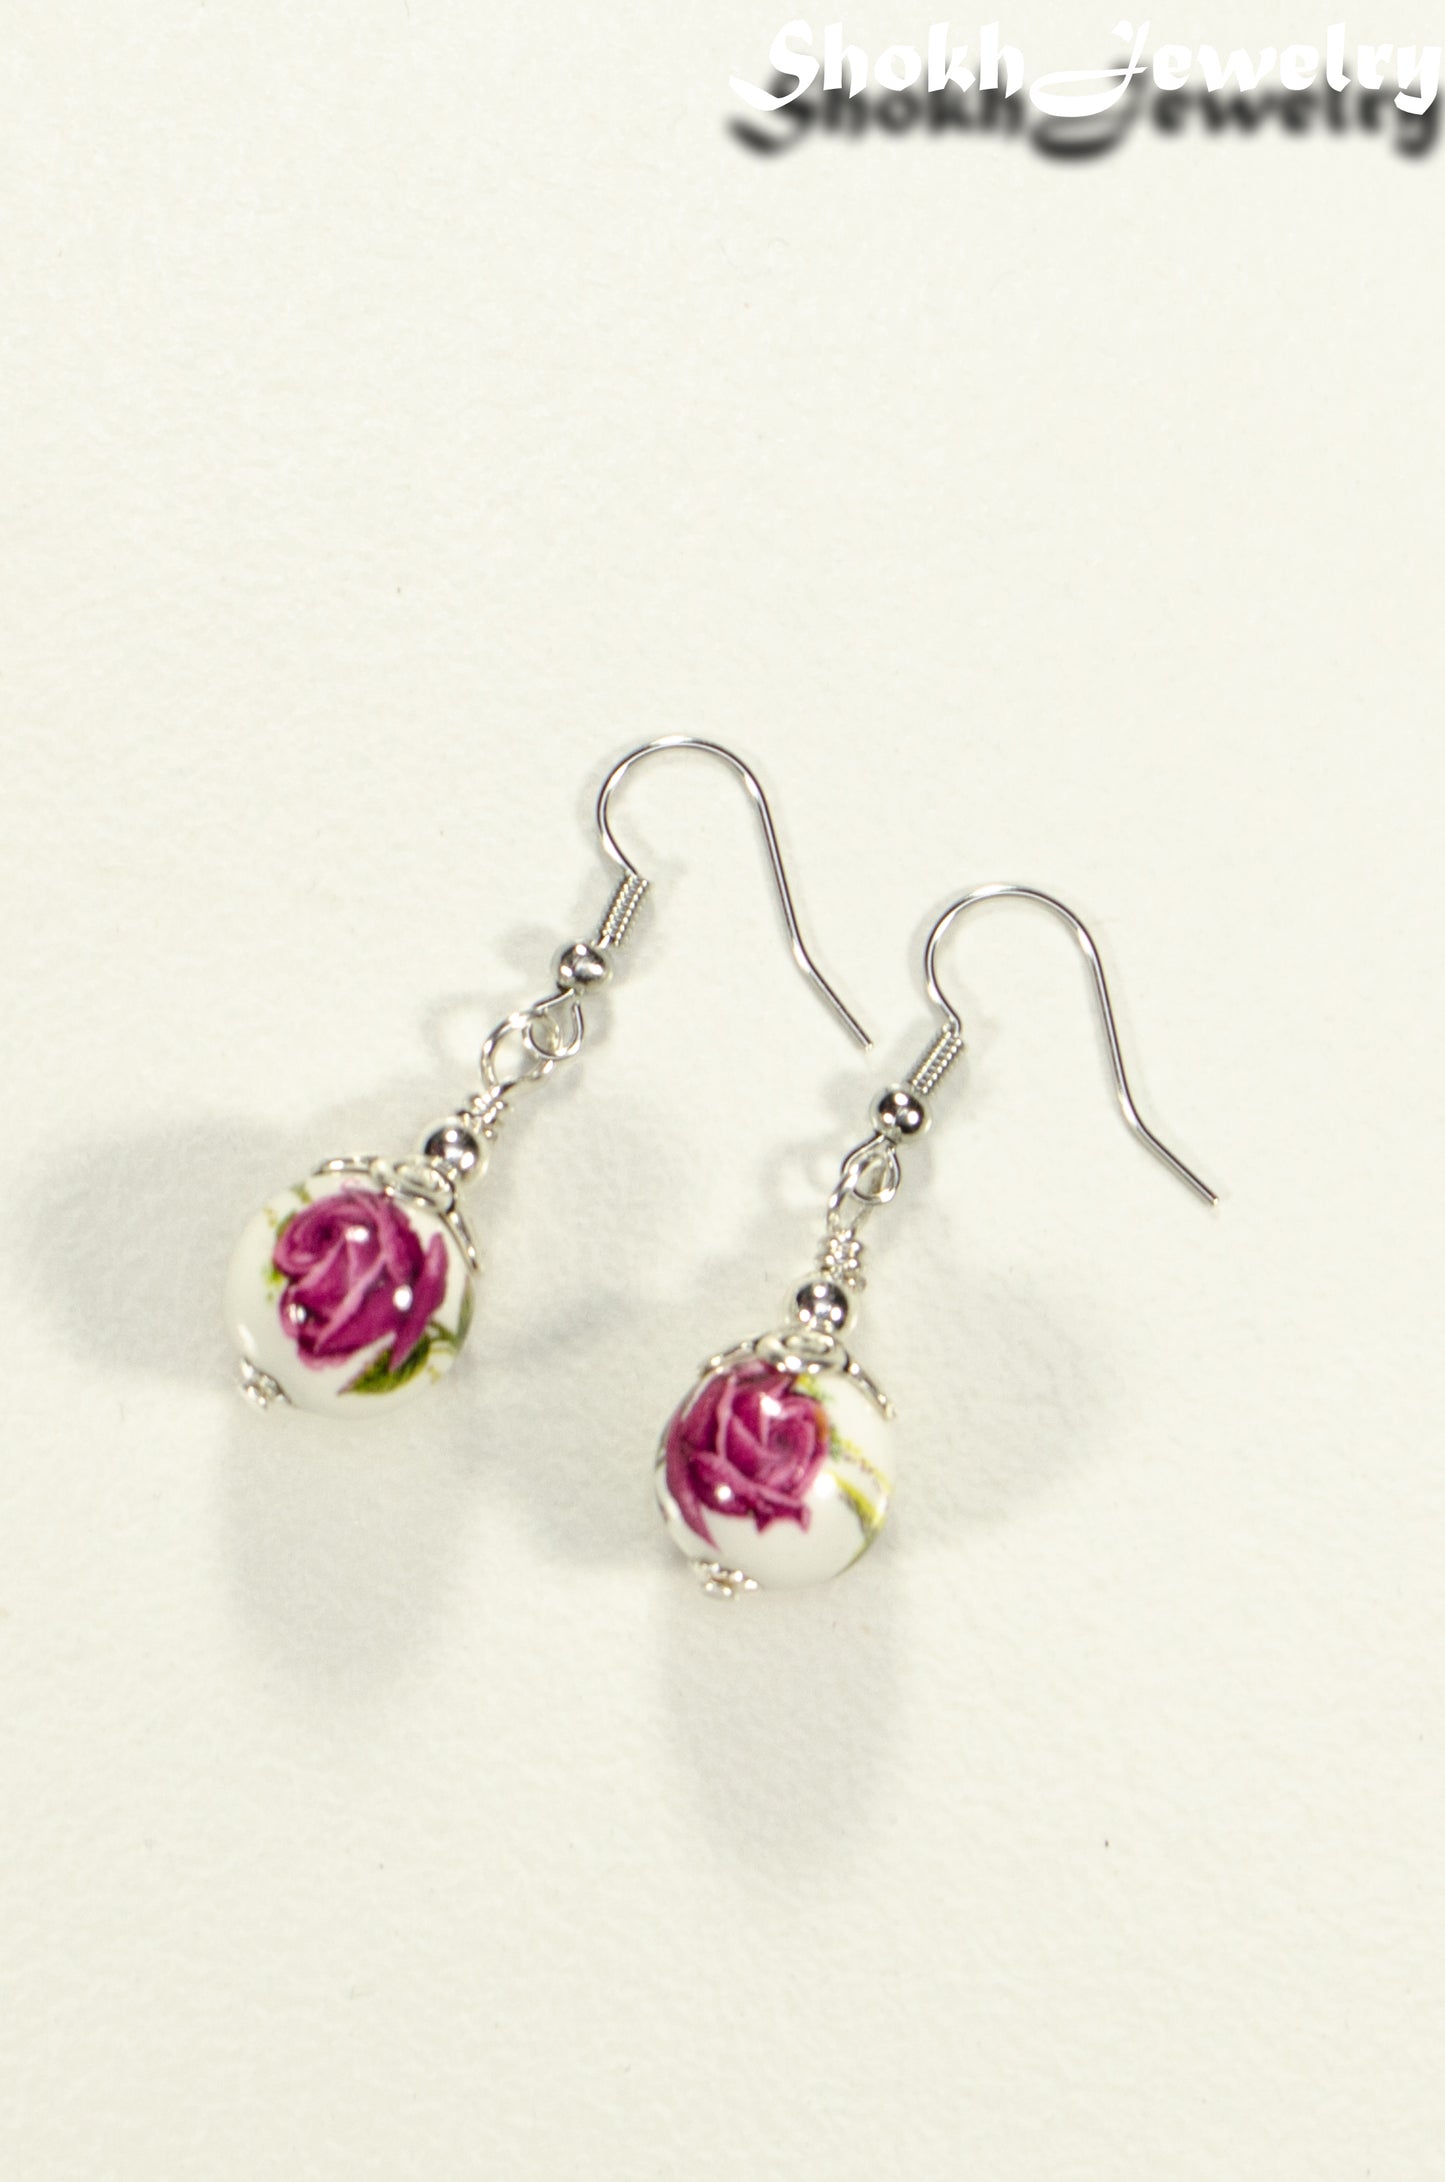 Top view of 12mm Ceramic Pink Flower Earrings